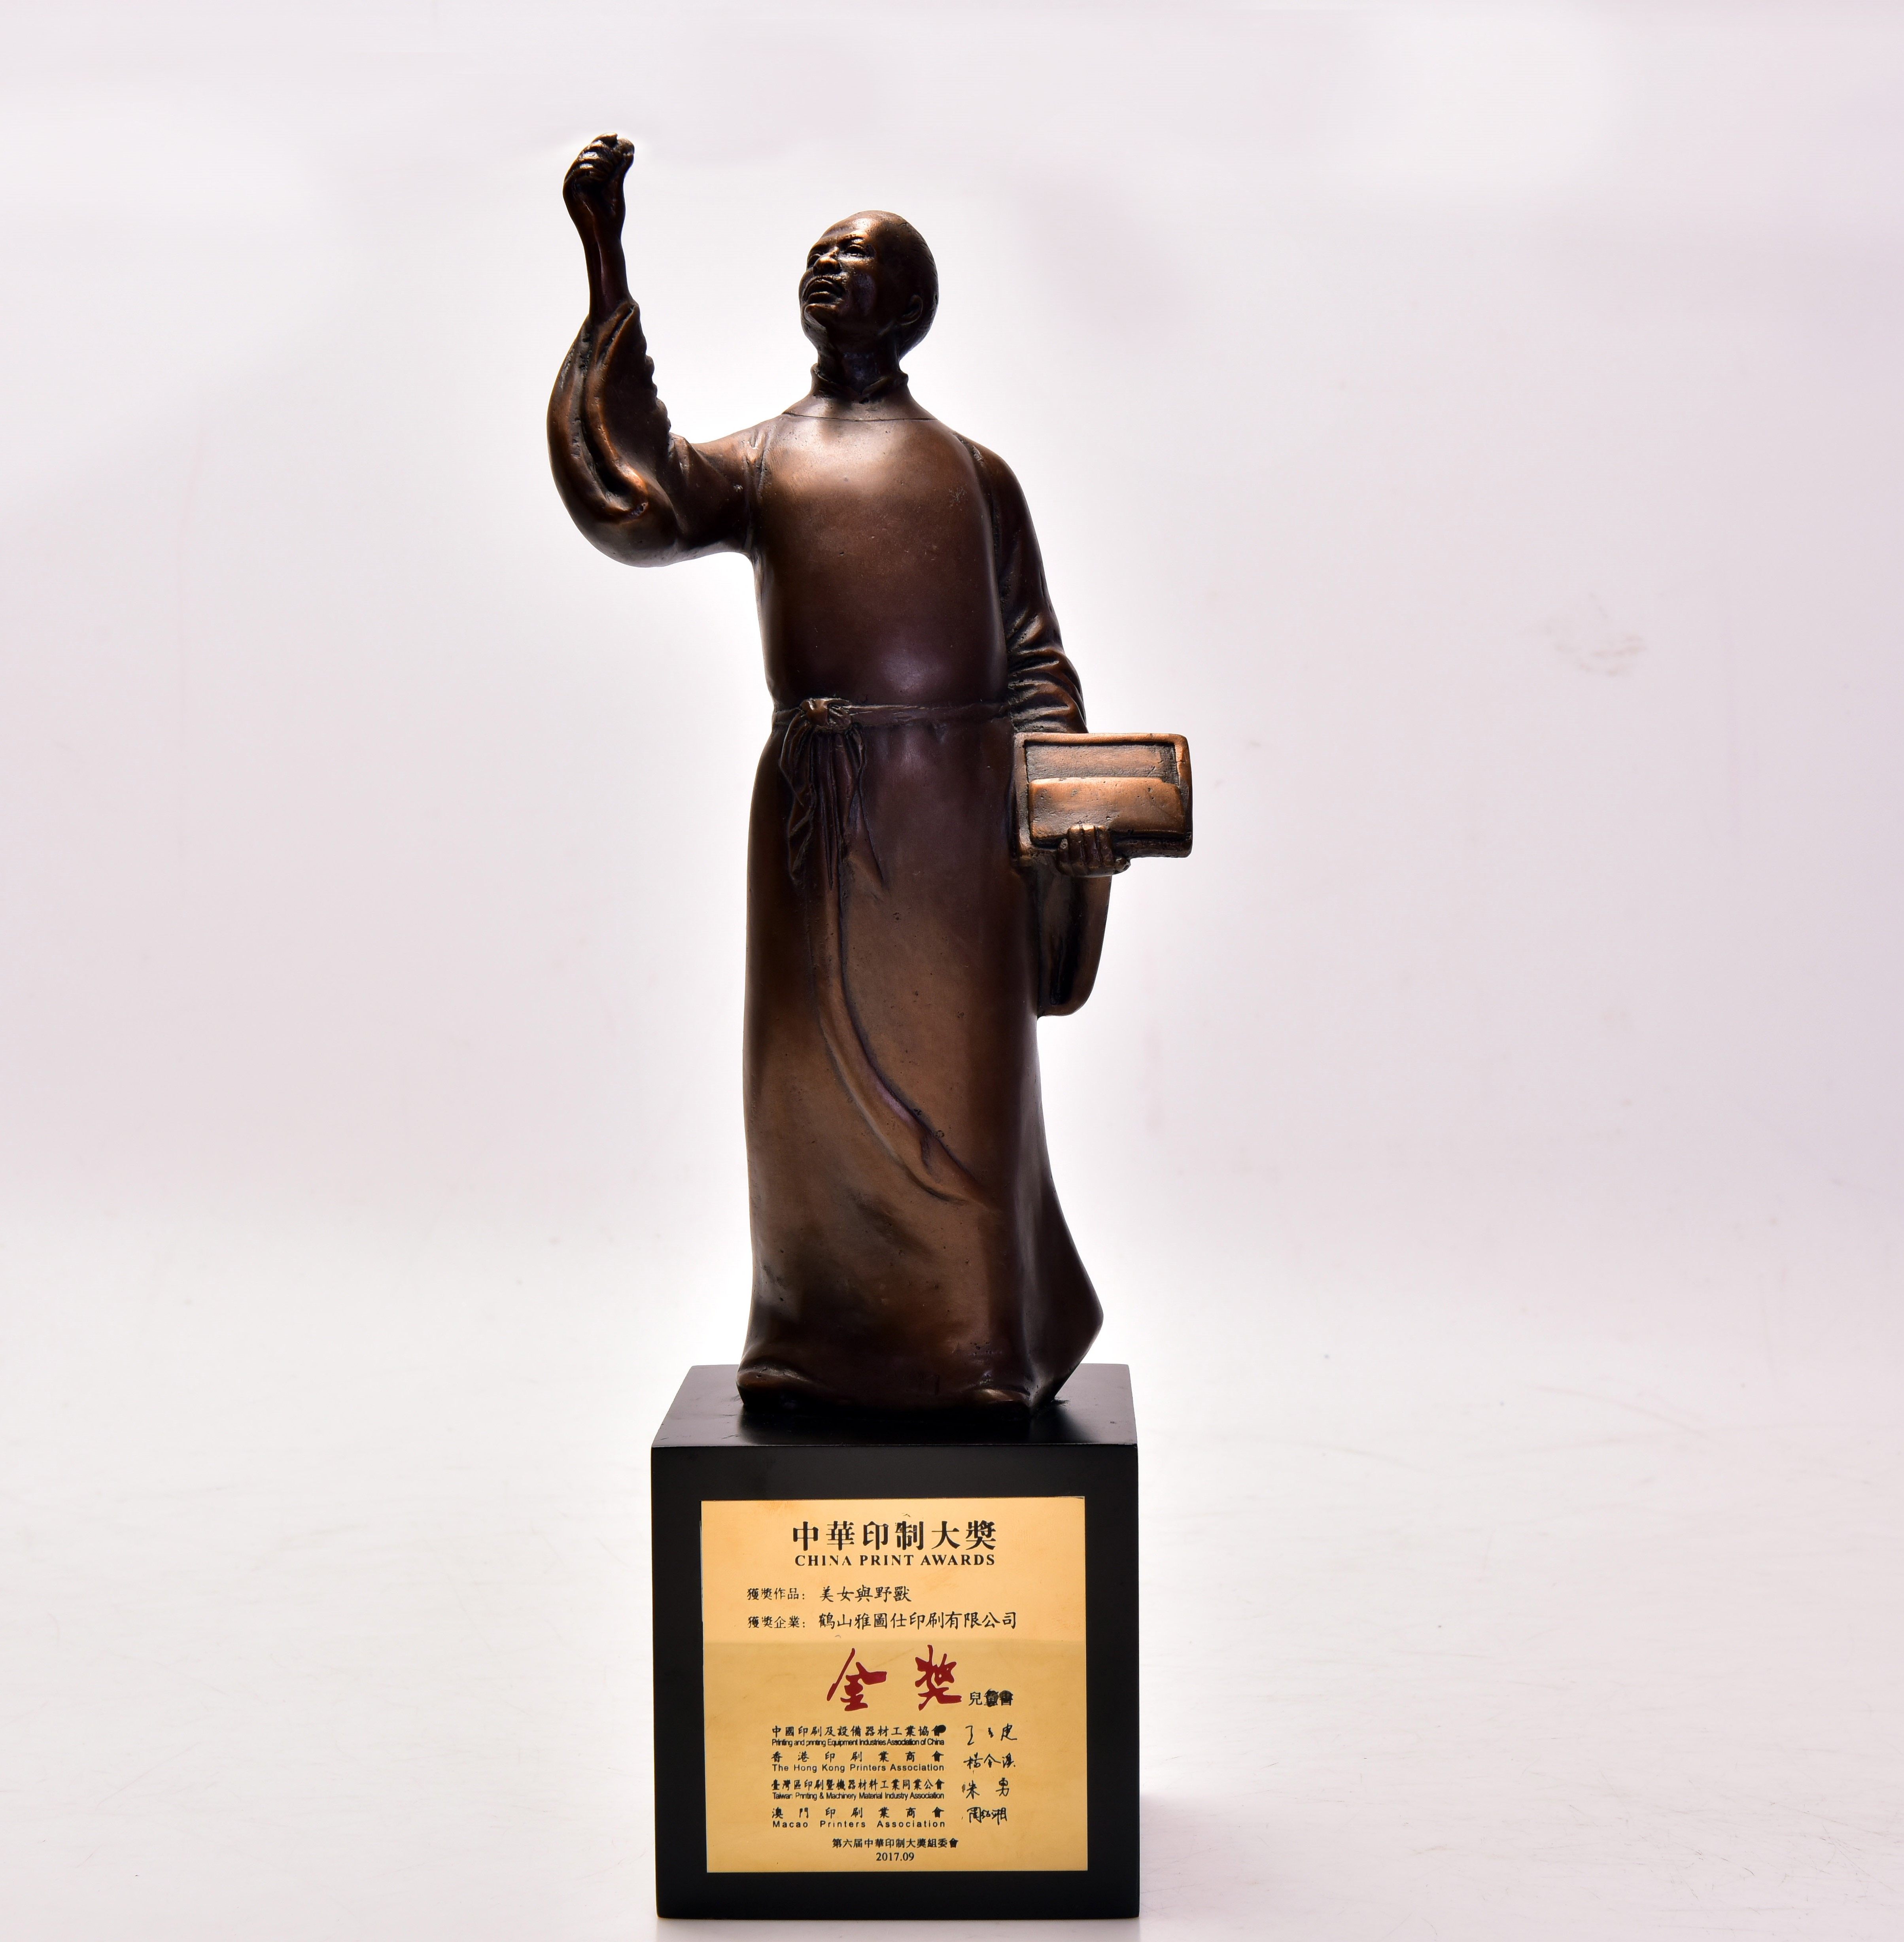 6th China Print Awards